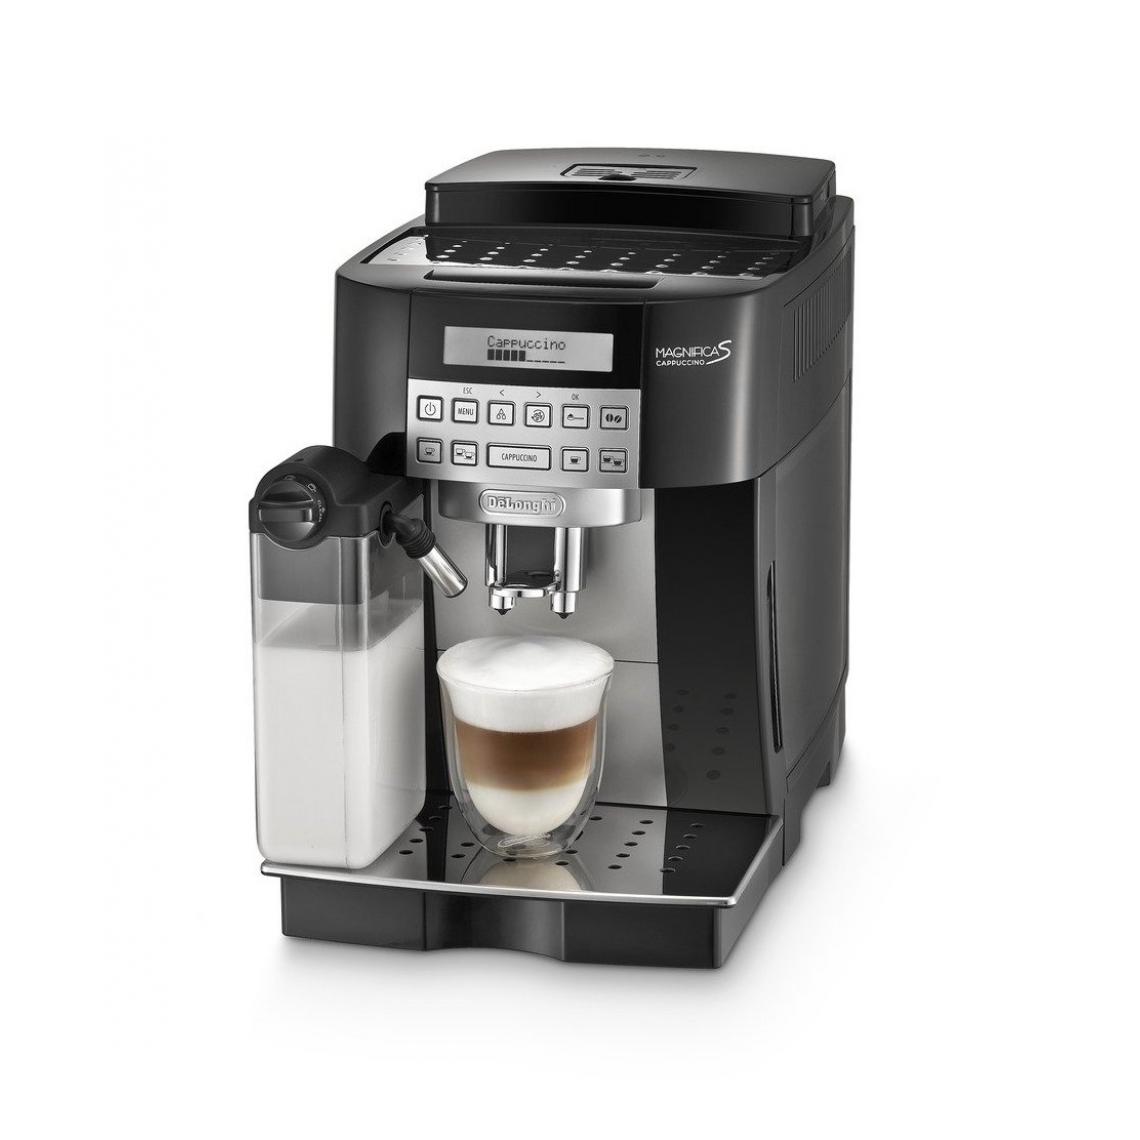 Delonghi - ECAM22.360.B Machine expresso avec broyeur a grains Magnificas Cappuccino - Noir/Argent - Expresso - Cafetière